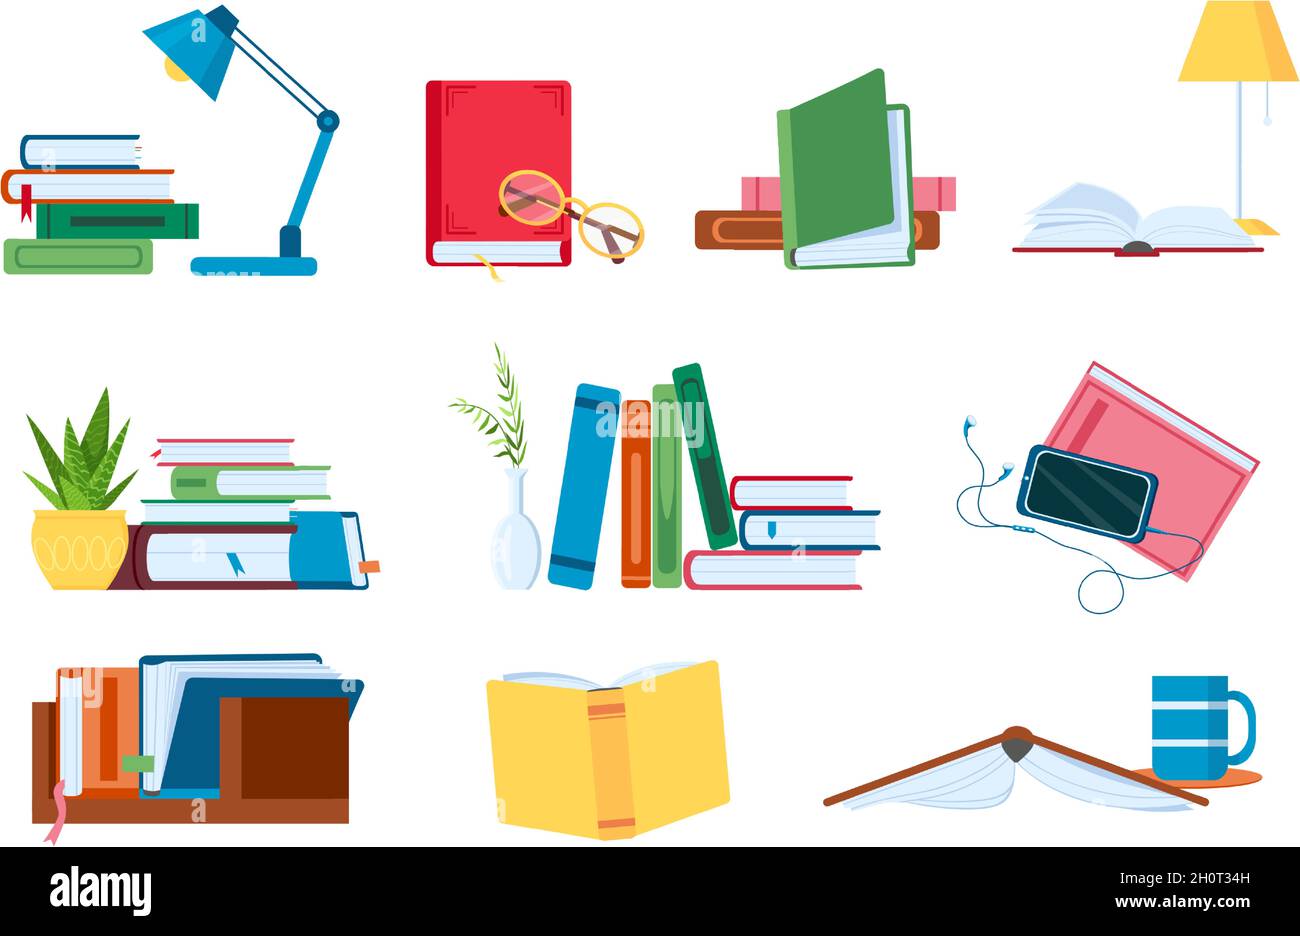 Lesen von Literatur, flachen Bücherstapeln und Stapeln zum Studieren. Offene und geschlossene Bücher mit Lampe. Buchhandlung, Schule oder Hörbuch Vektor-Konzept-Set Stock Vektor